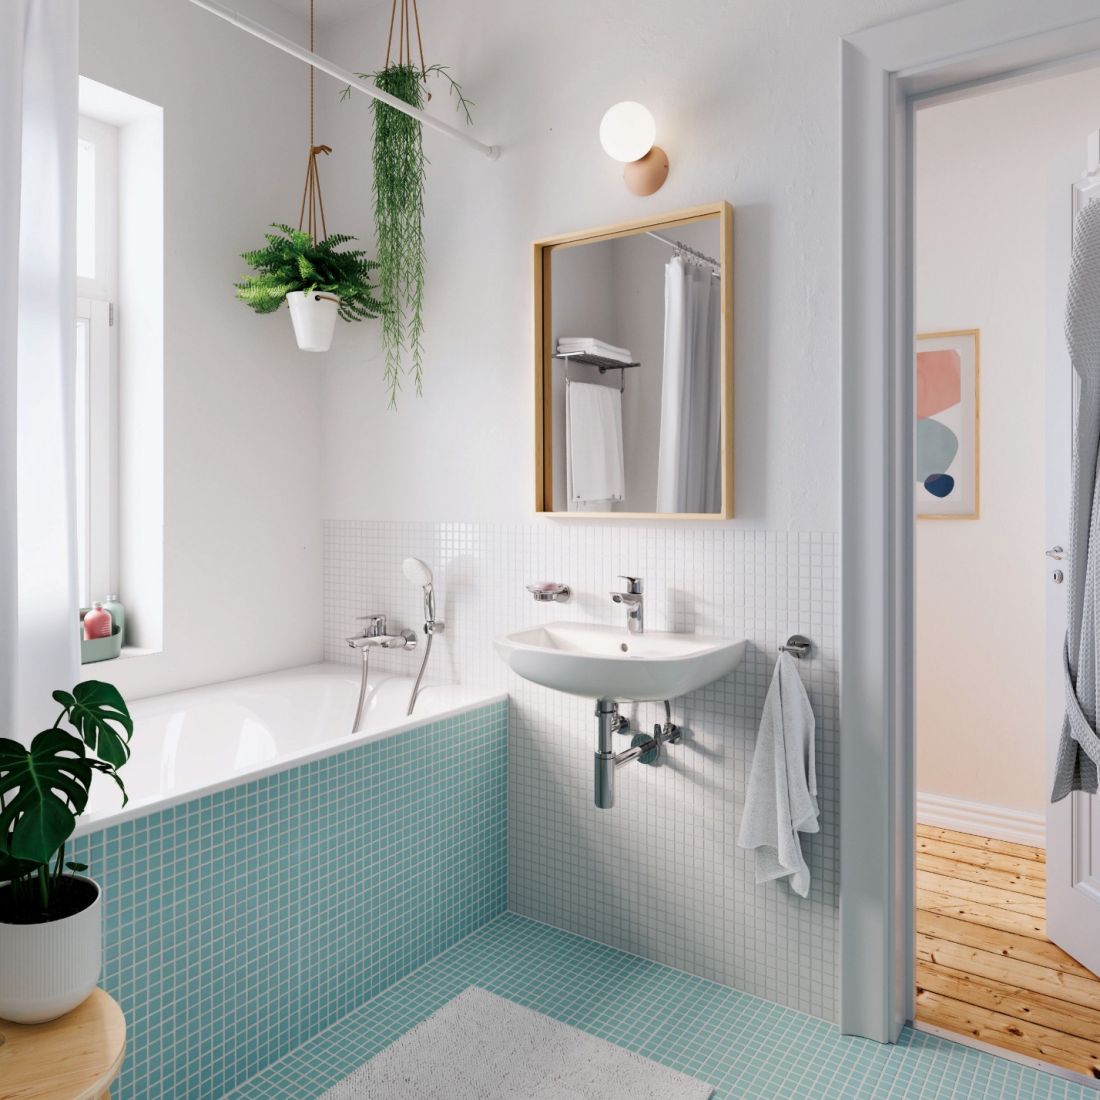 30 mẫu thiết kế nhà vệ sinh đẹp, đơn giản, hiện đại năm 2022